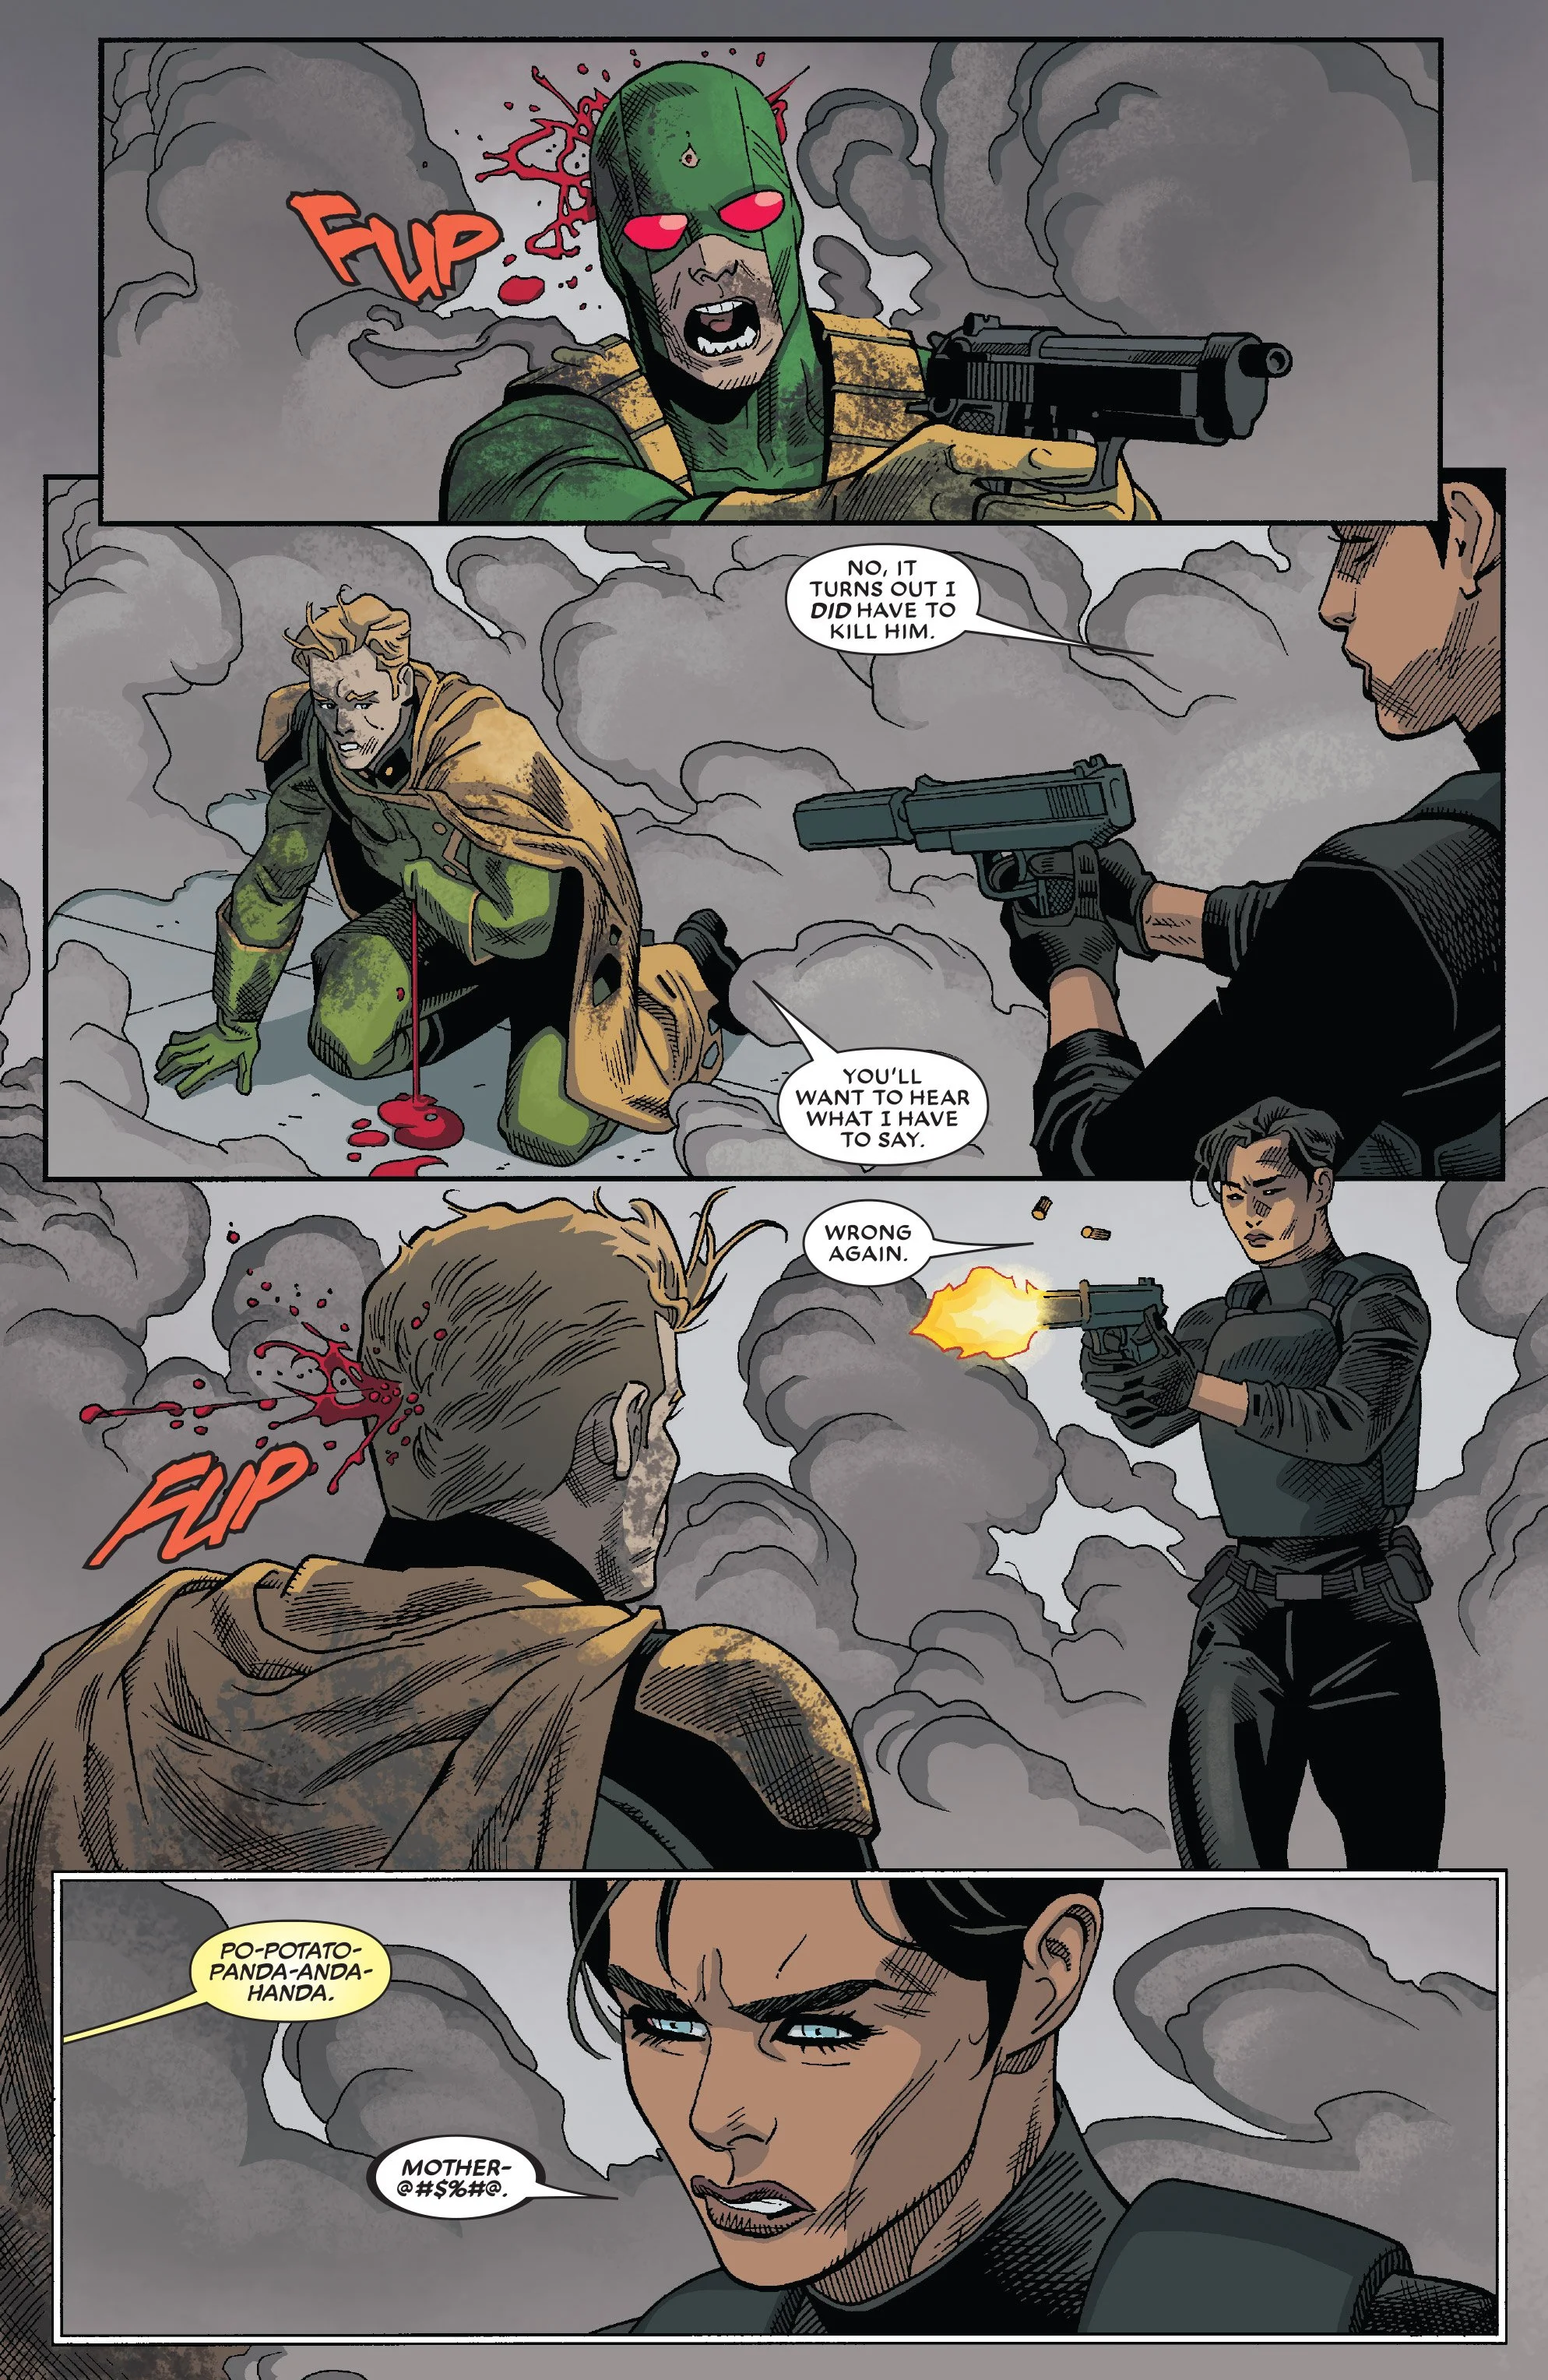 Комикс про Дэдпула подтверждает — теперь у Marvel два Капитана Америка - фото 2